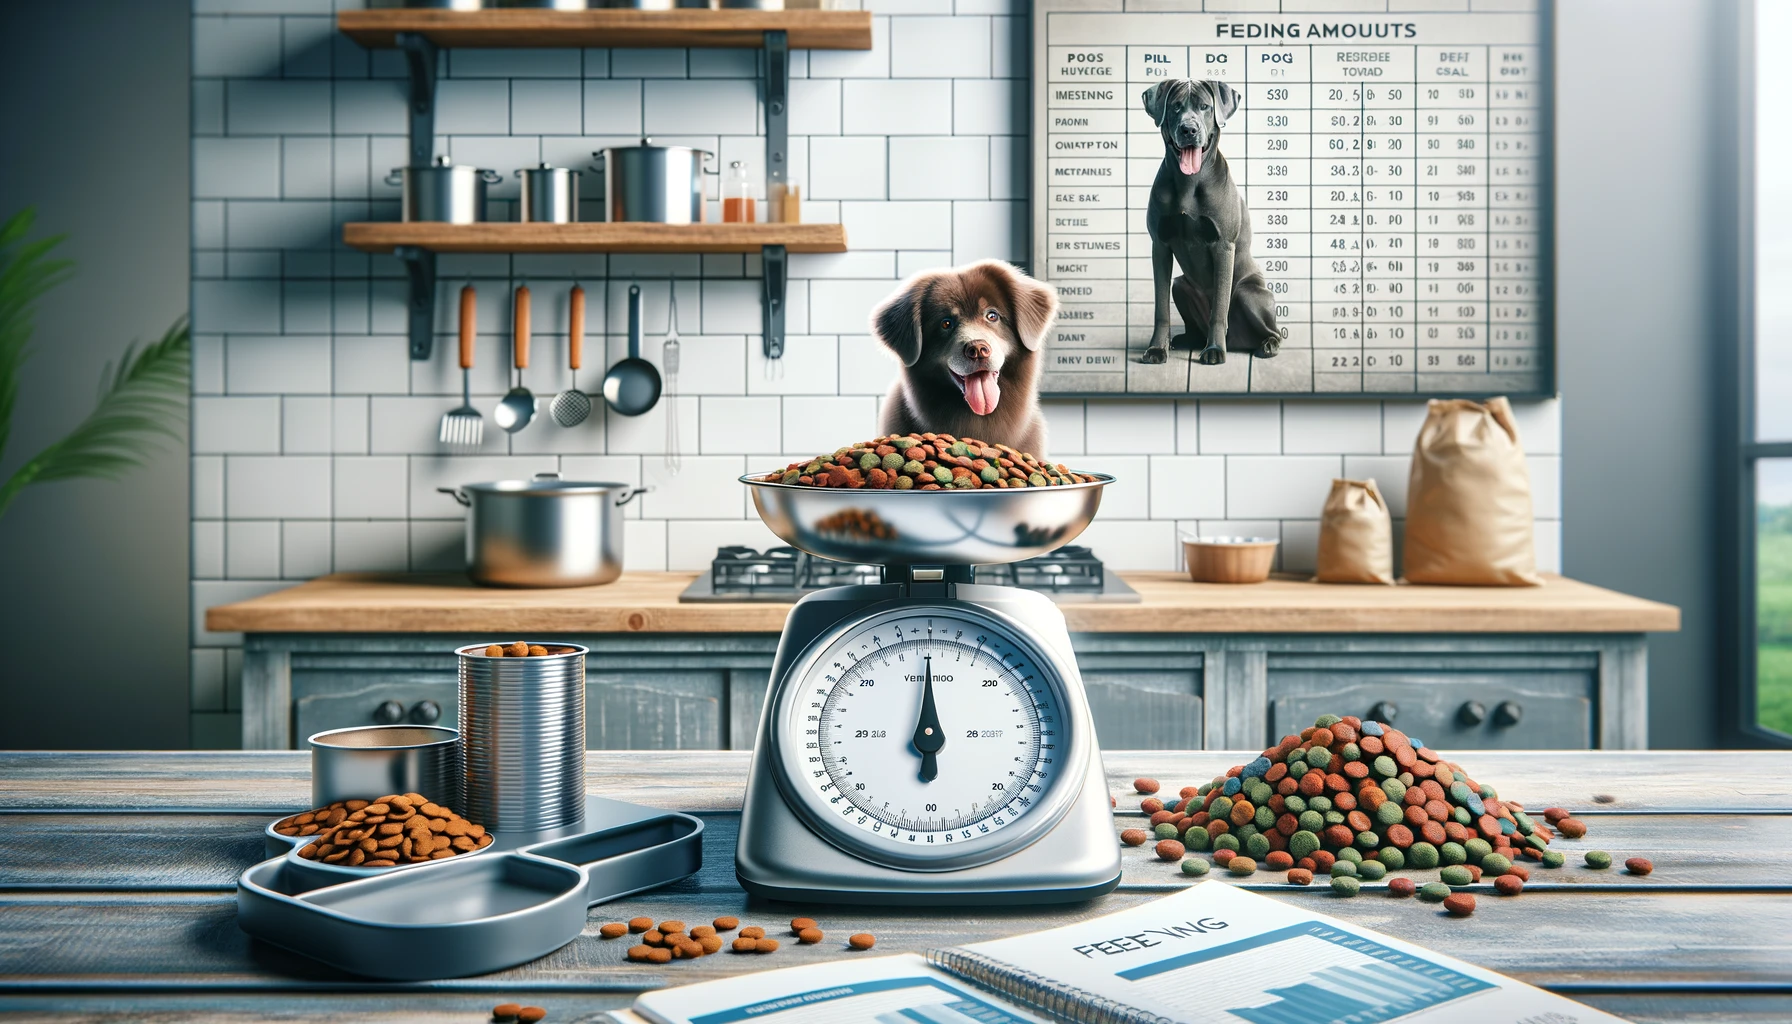 デジタルスケールに計測されたドッグフードの部分が乗せられ、異なる犬のサイズや品種のための給餌チャートまたはガイドが隣に置かれた、整然としたキッチンカウンターを示す画像。